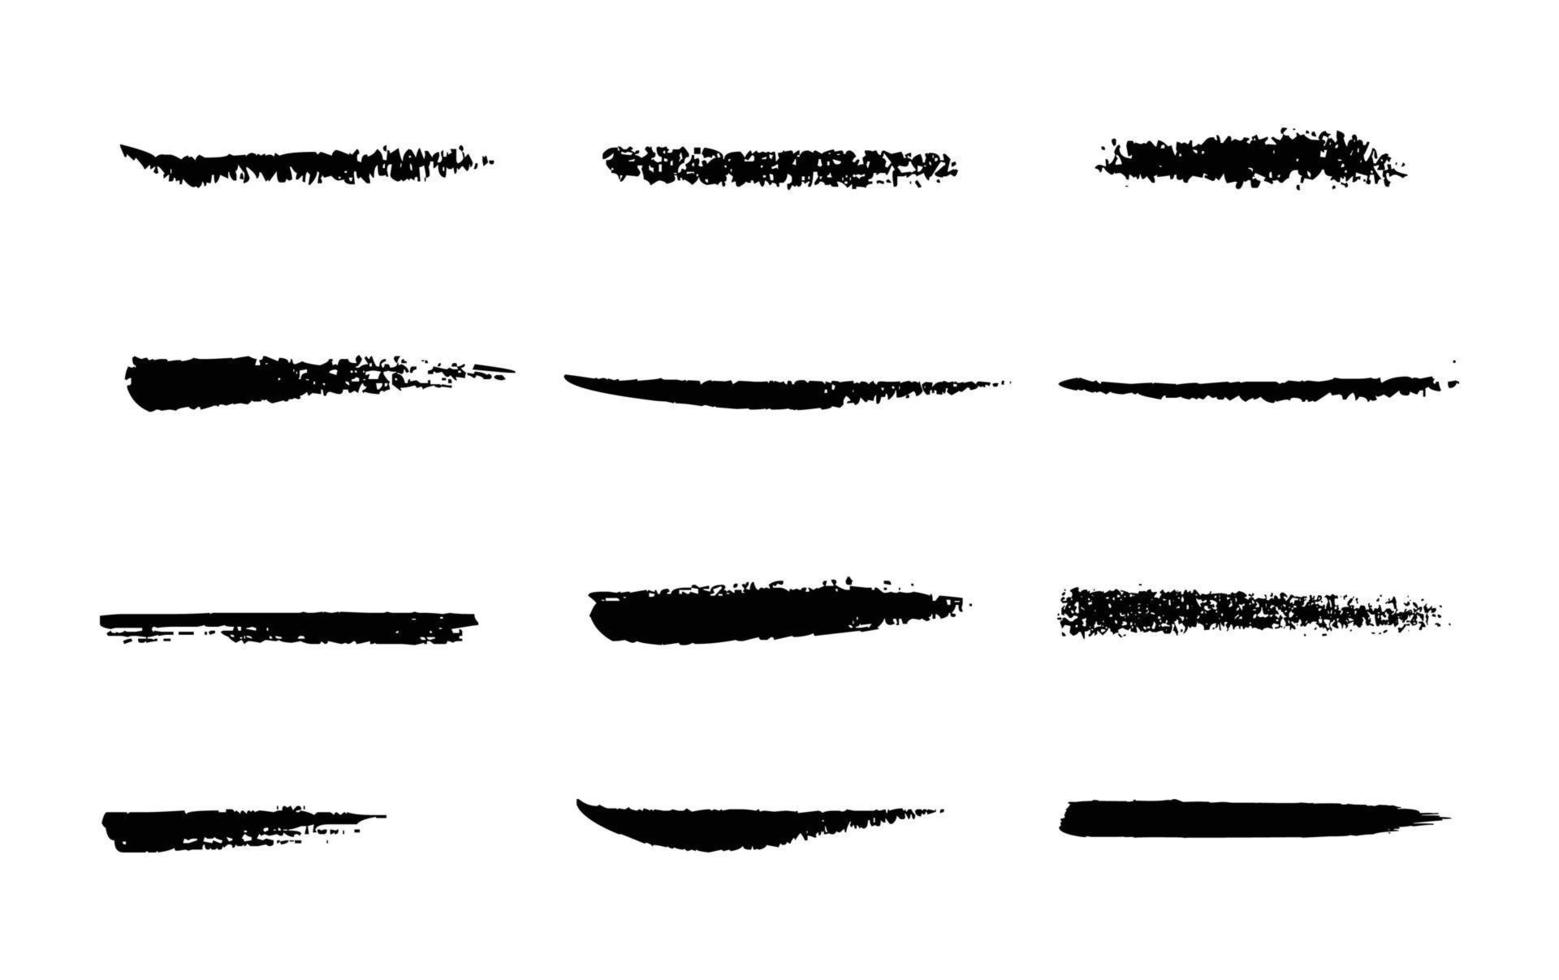 collection d'éclaboussures d'encre d'ornement. composition de traits de pinceau abstrait vectoriel noir avec éclaboussures de peinture.